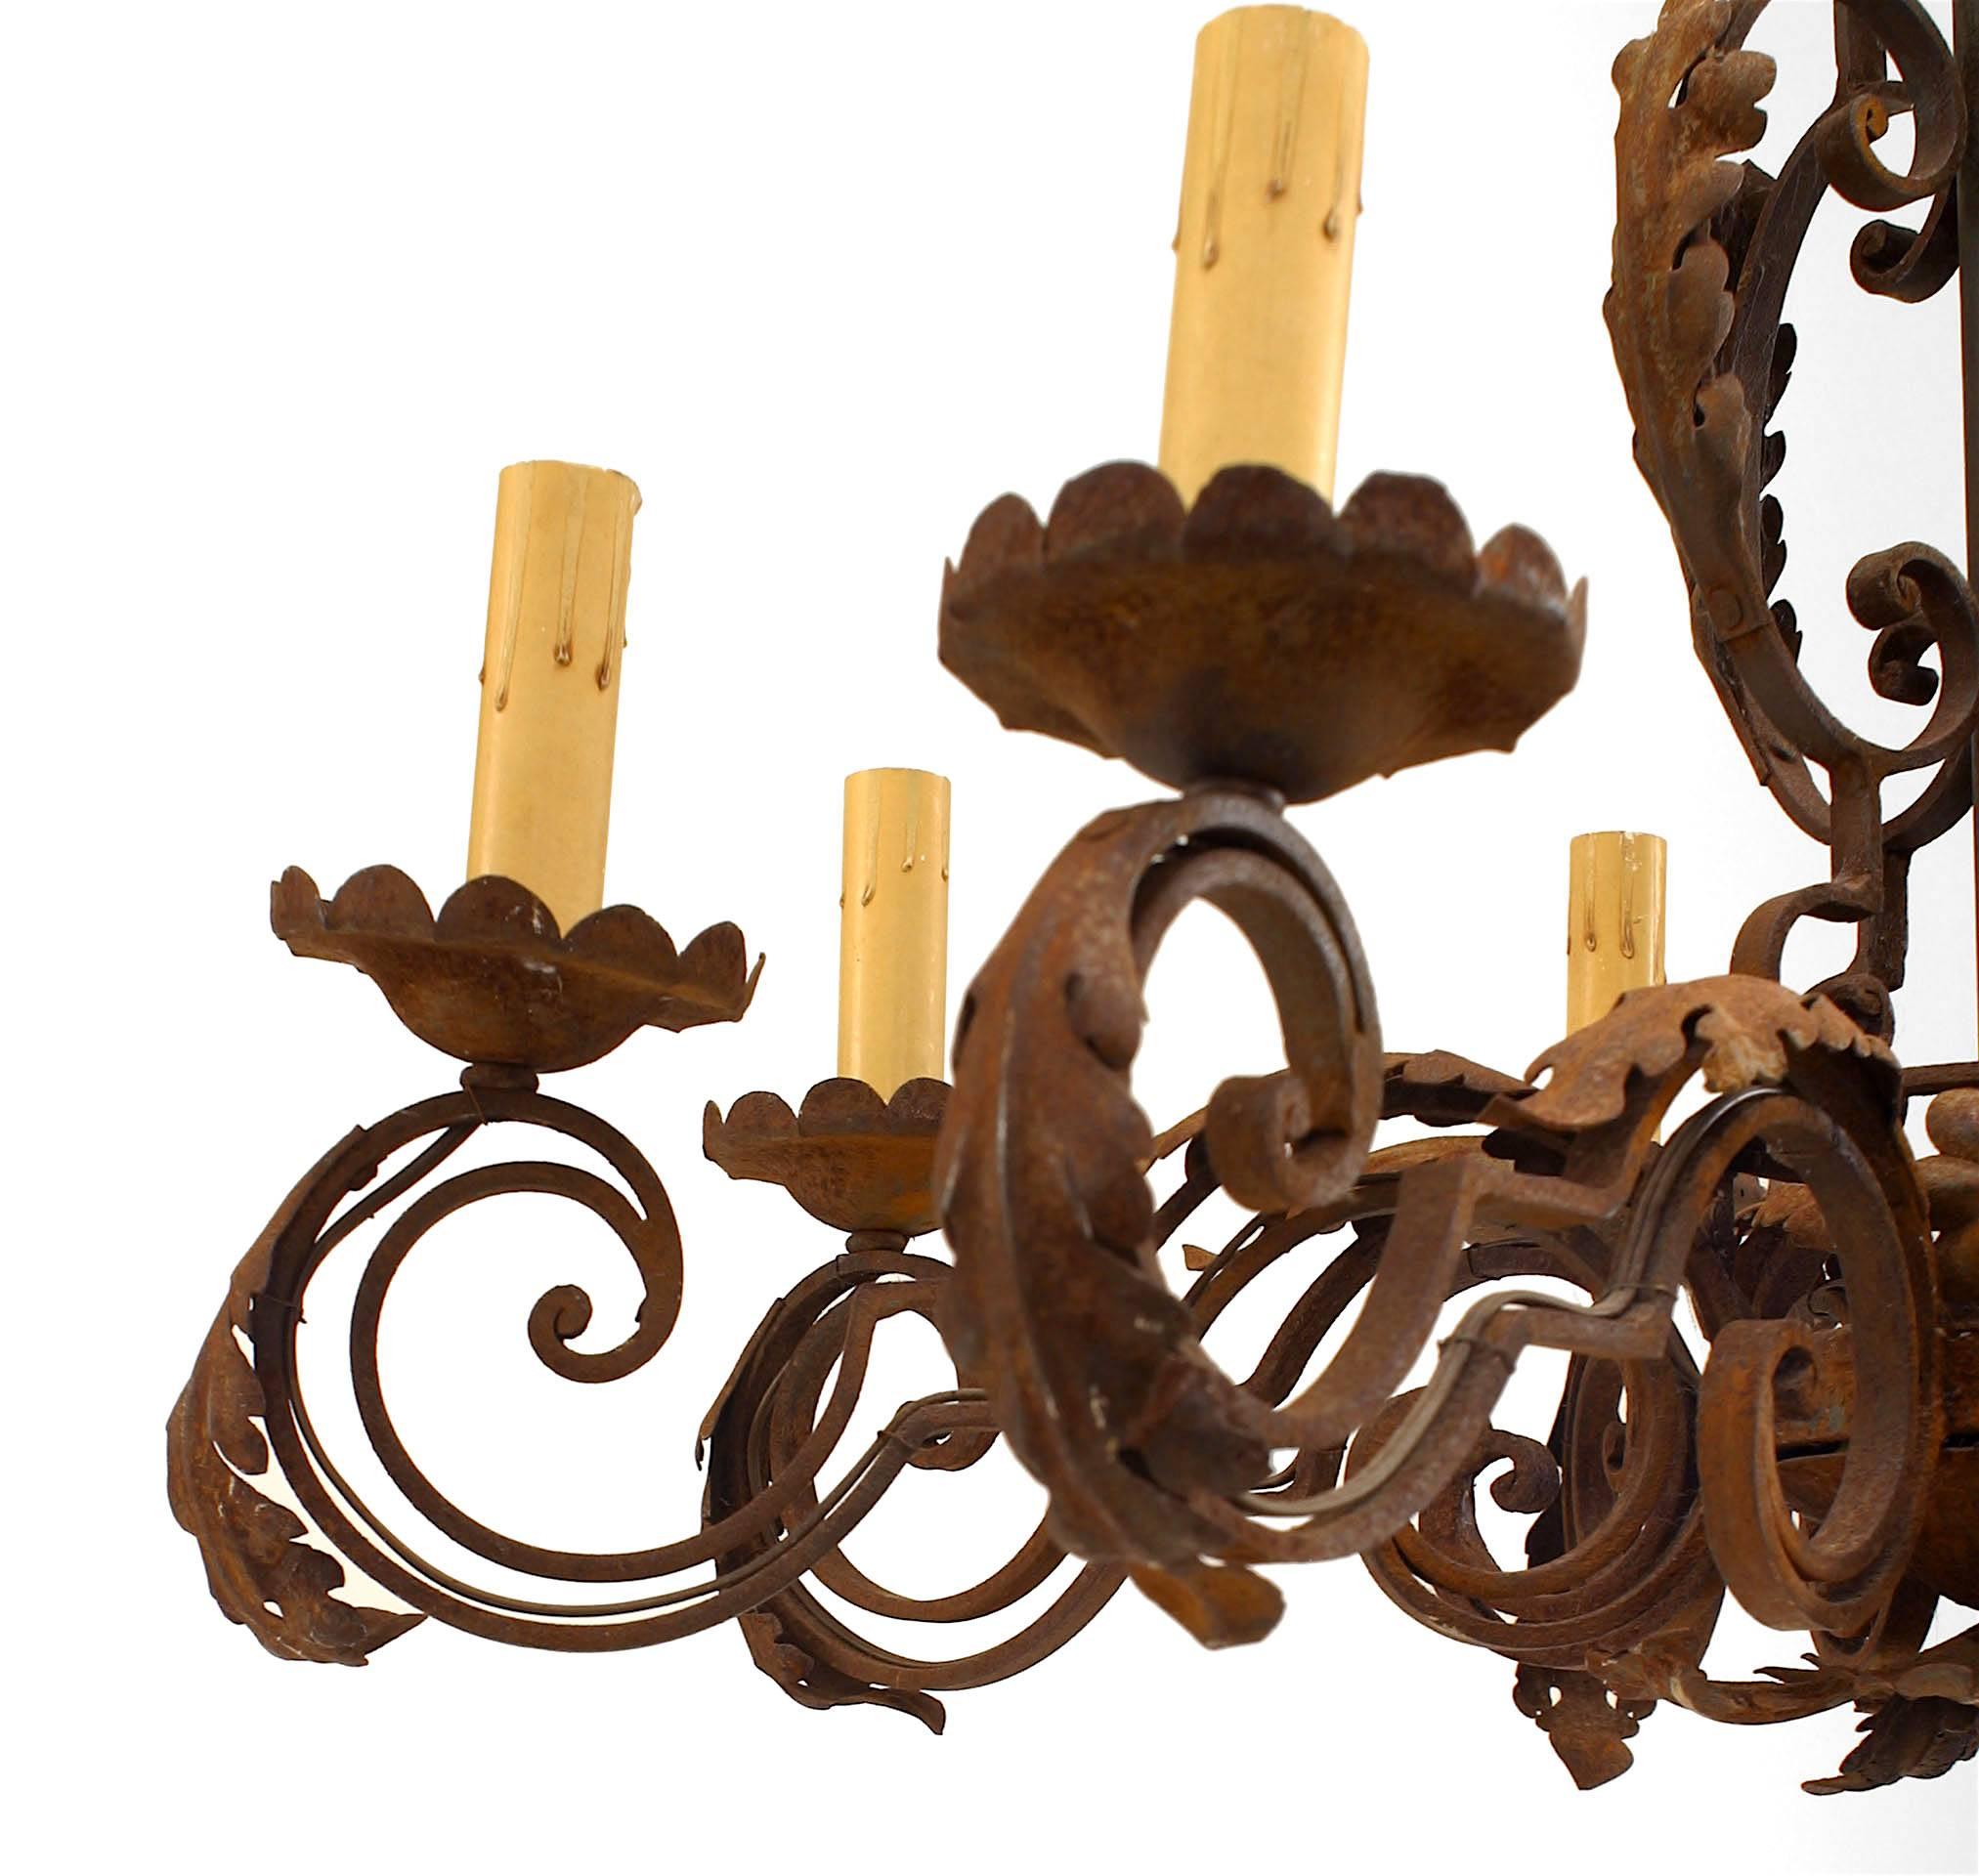 Lustre en fer forgé de style Renaissance italienne (20e siècle) avec 8 bras à motifs de volutes et garniture de feuilles.
